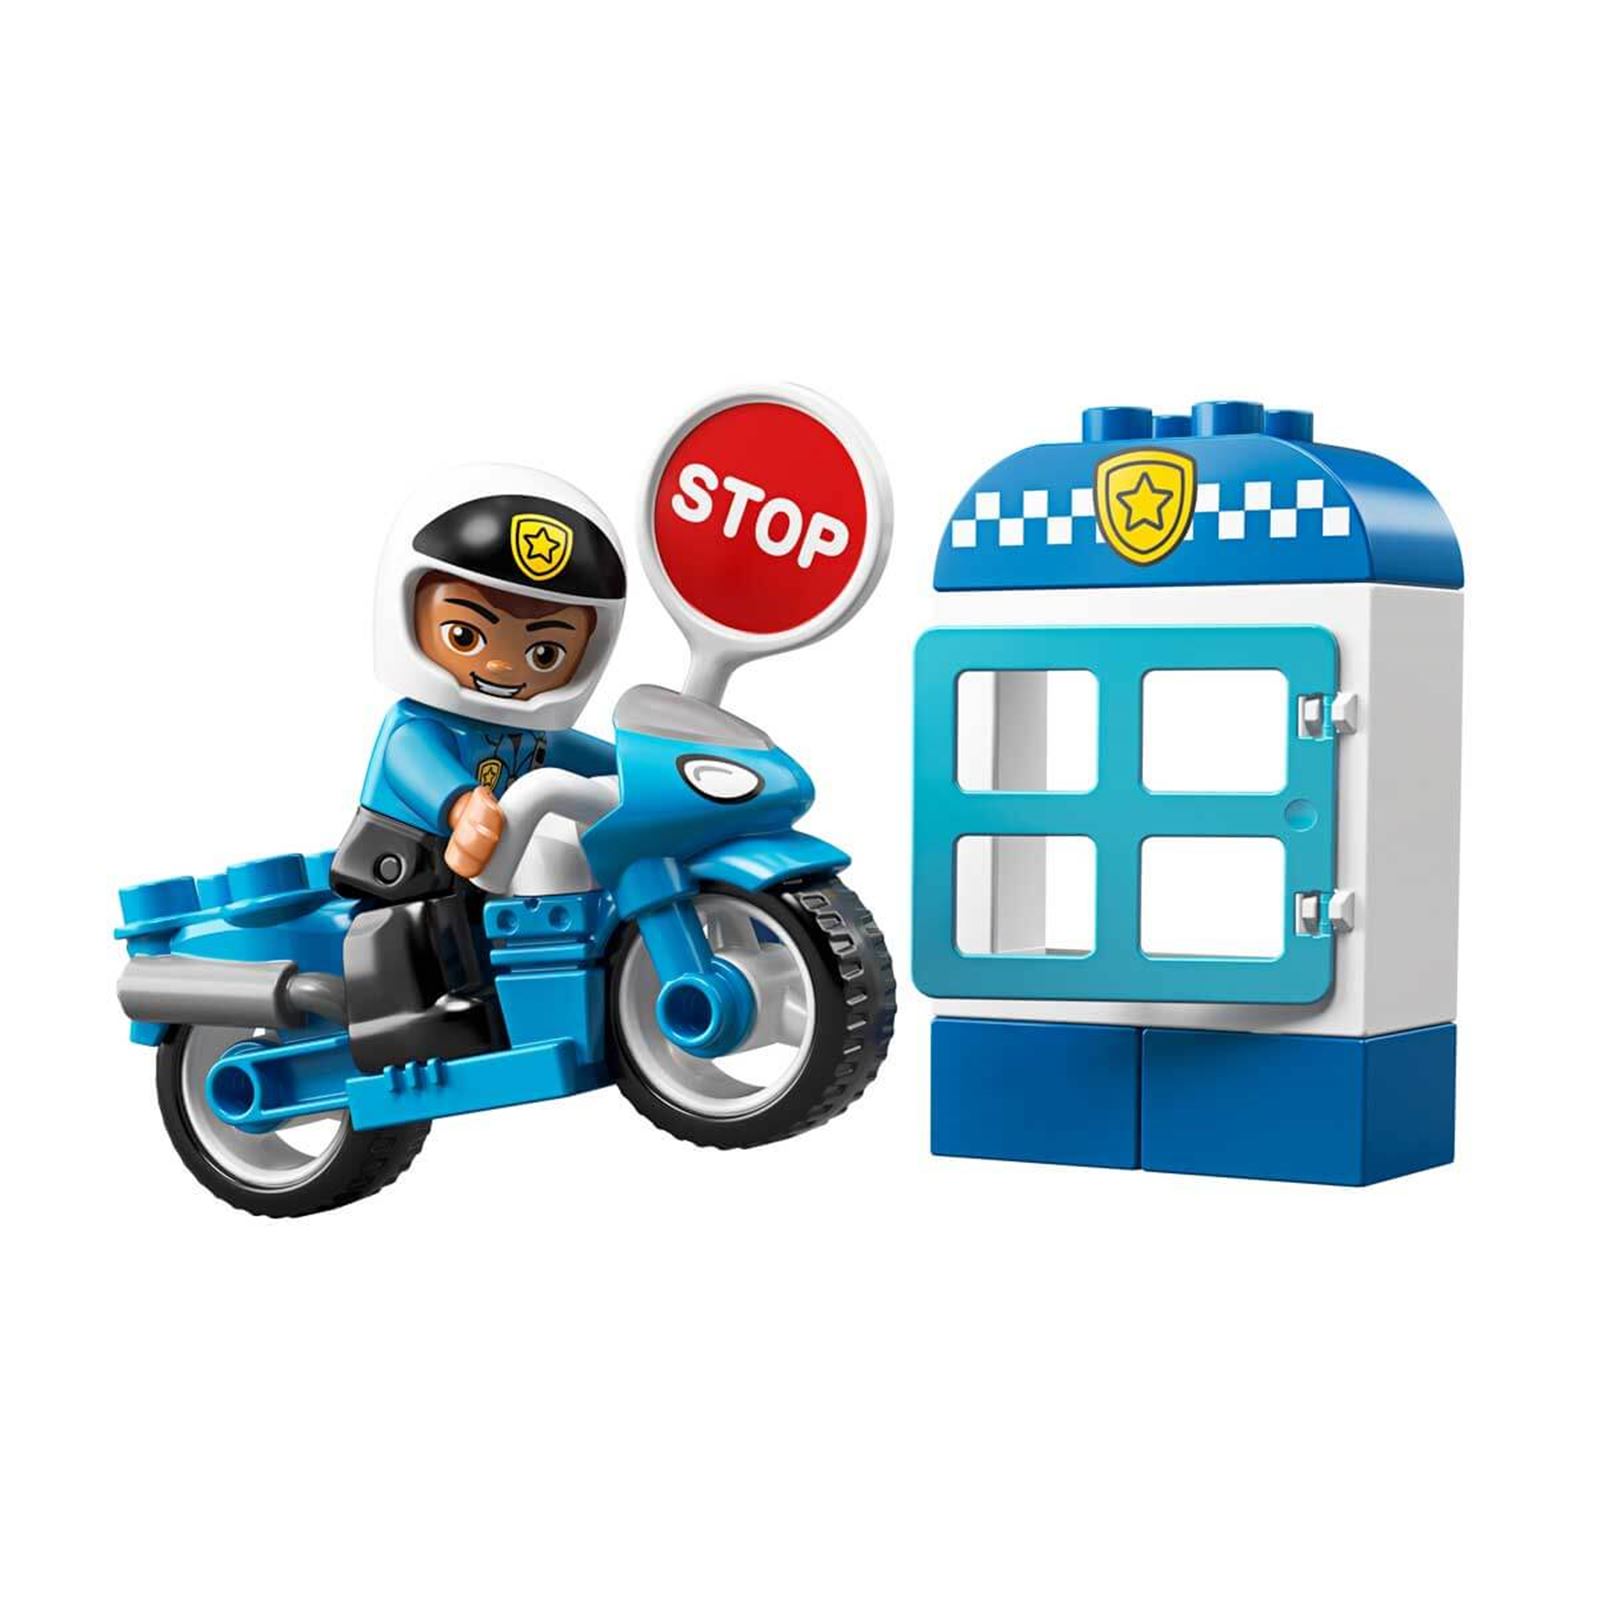 LEGO DUPLO Town Polis Motosikleti 10900